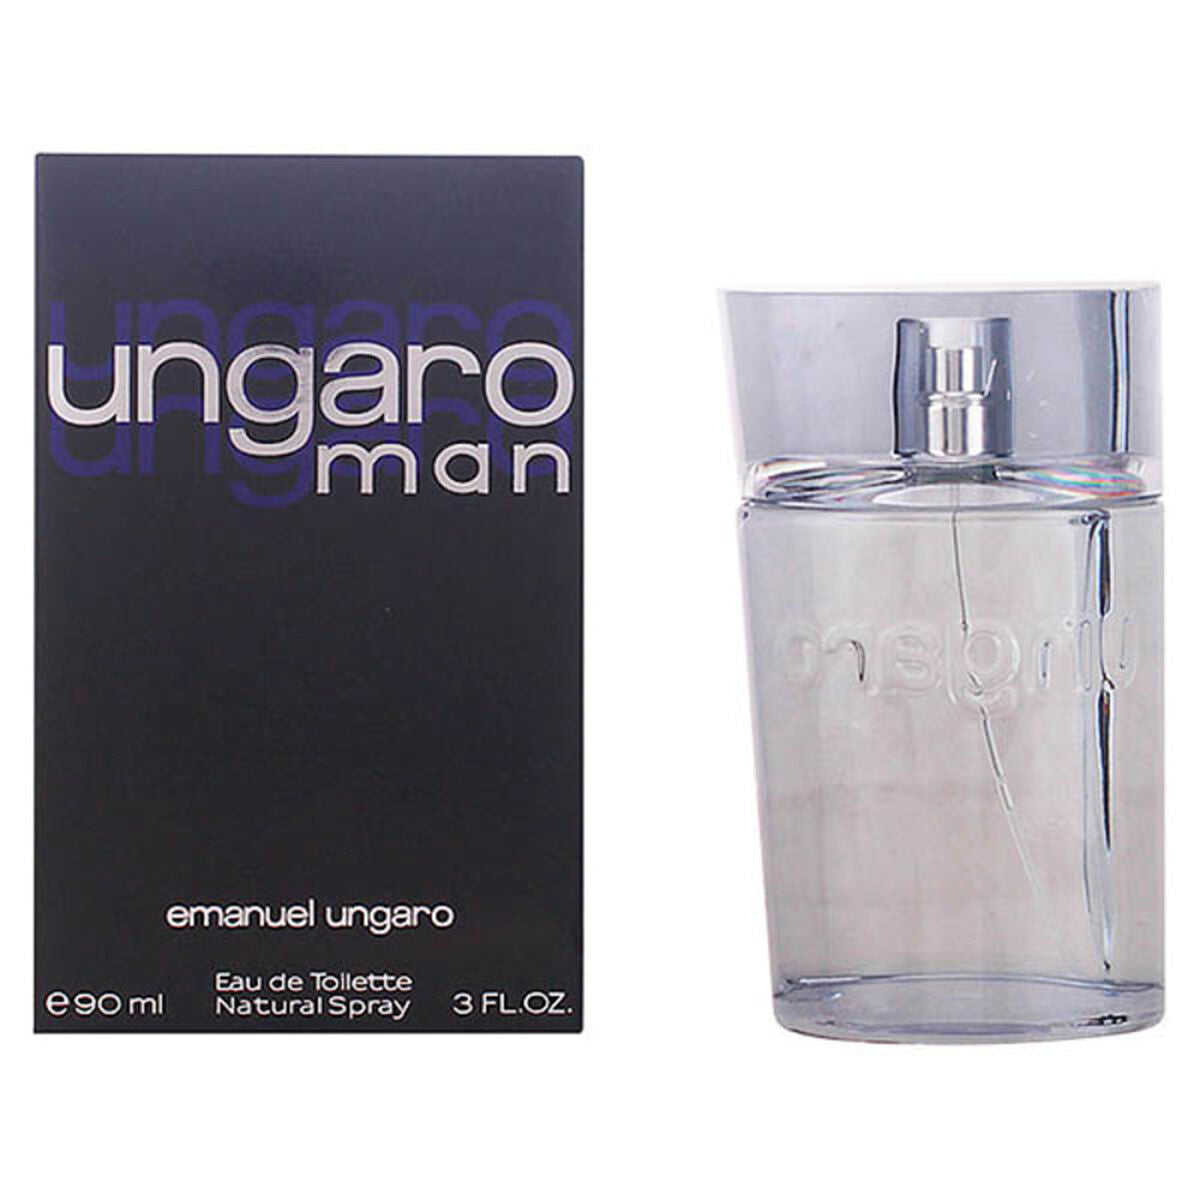 Herenparfum Ungaro Man Emanuel Ungaro EDT (90 ml)